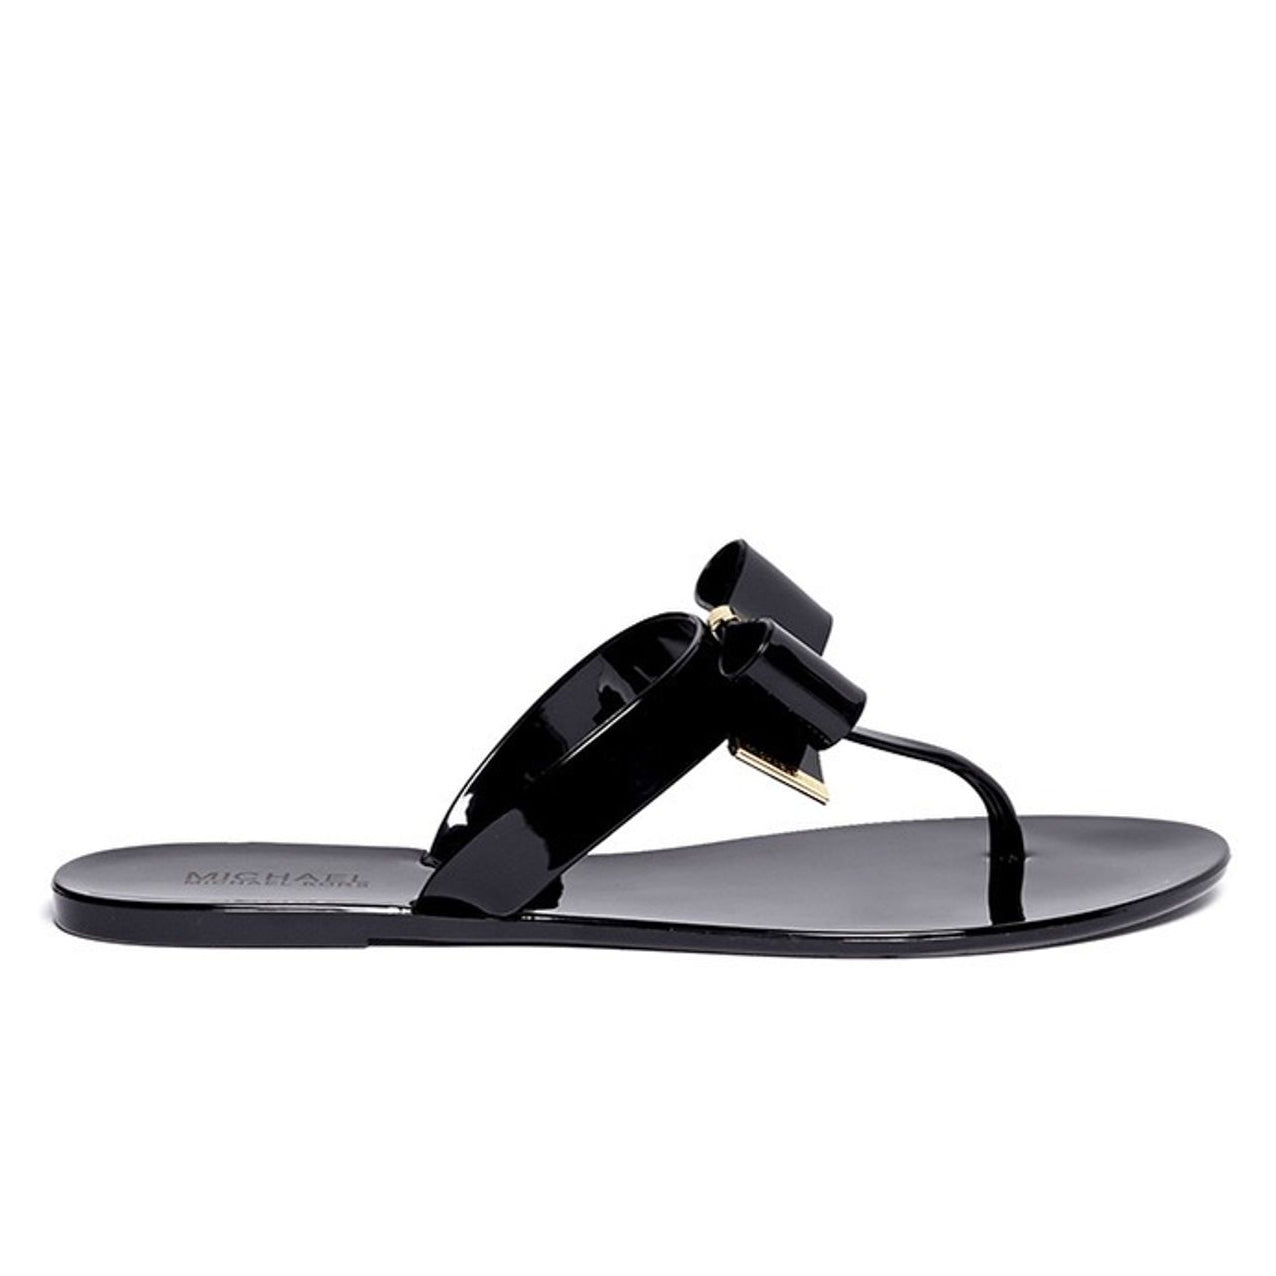 Michael Kors Kayden Bow Sandal - size 8.5